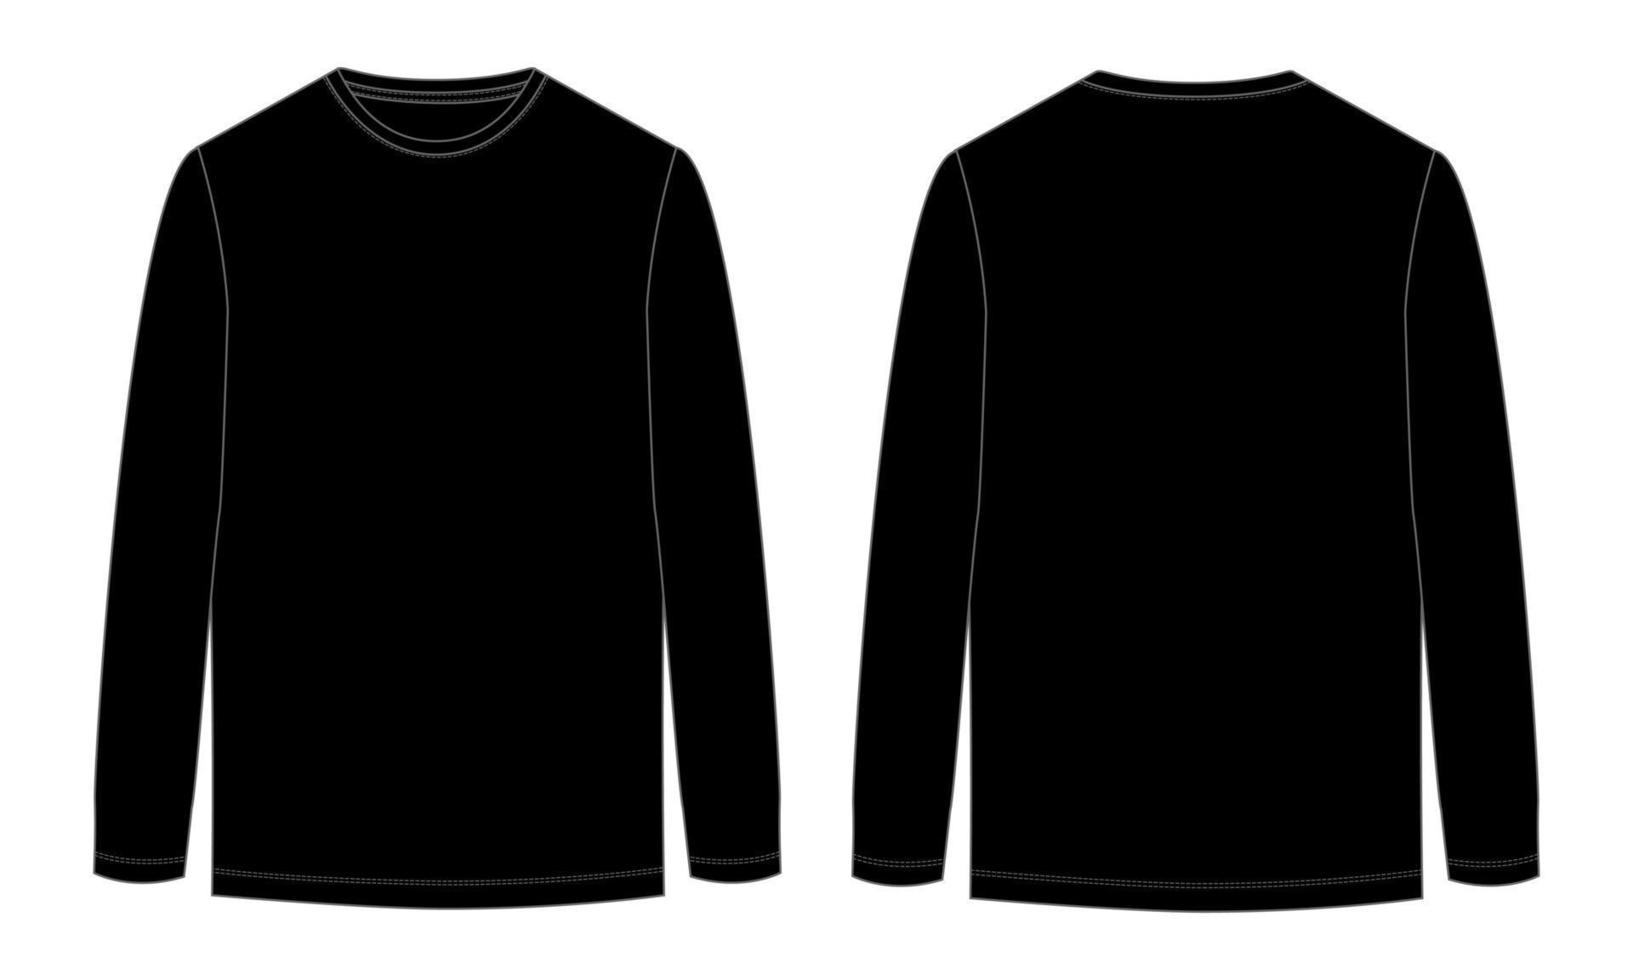 Langarm-T-Shirt technische Mode flache Skizze Vektor-Illustration schwarze Farbvorlage Vorder- und Rückansicht. Bekleidungsdesign mock-up cad einfach zu bearbeiten und anpassbar vektor